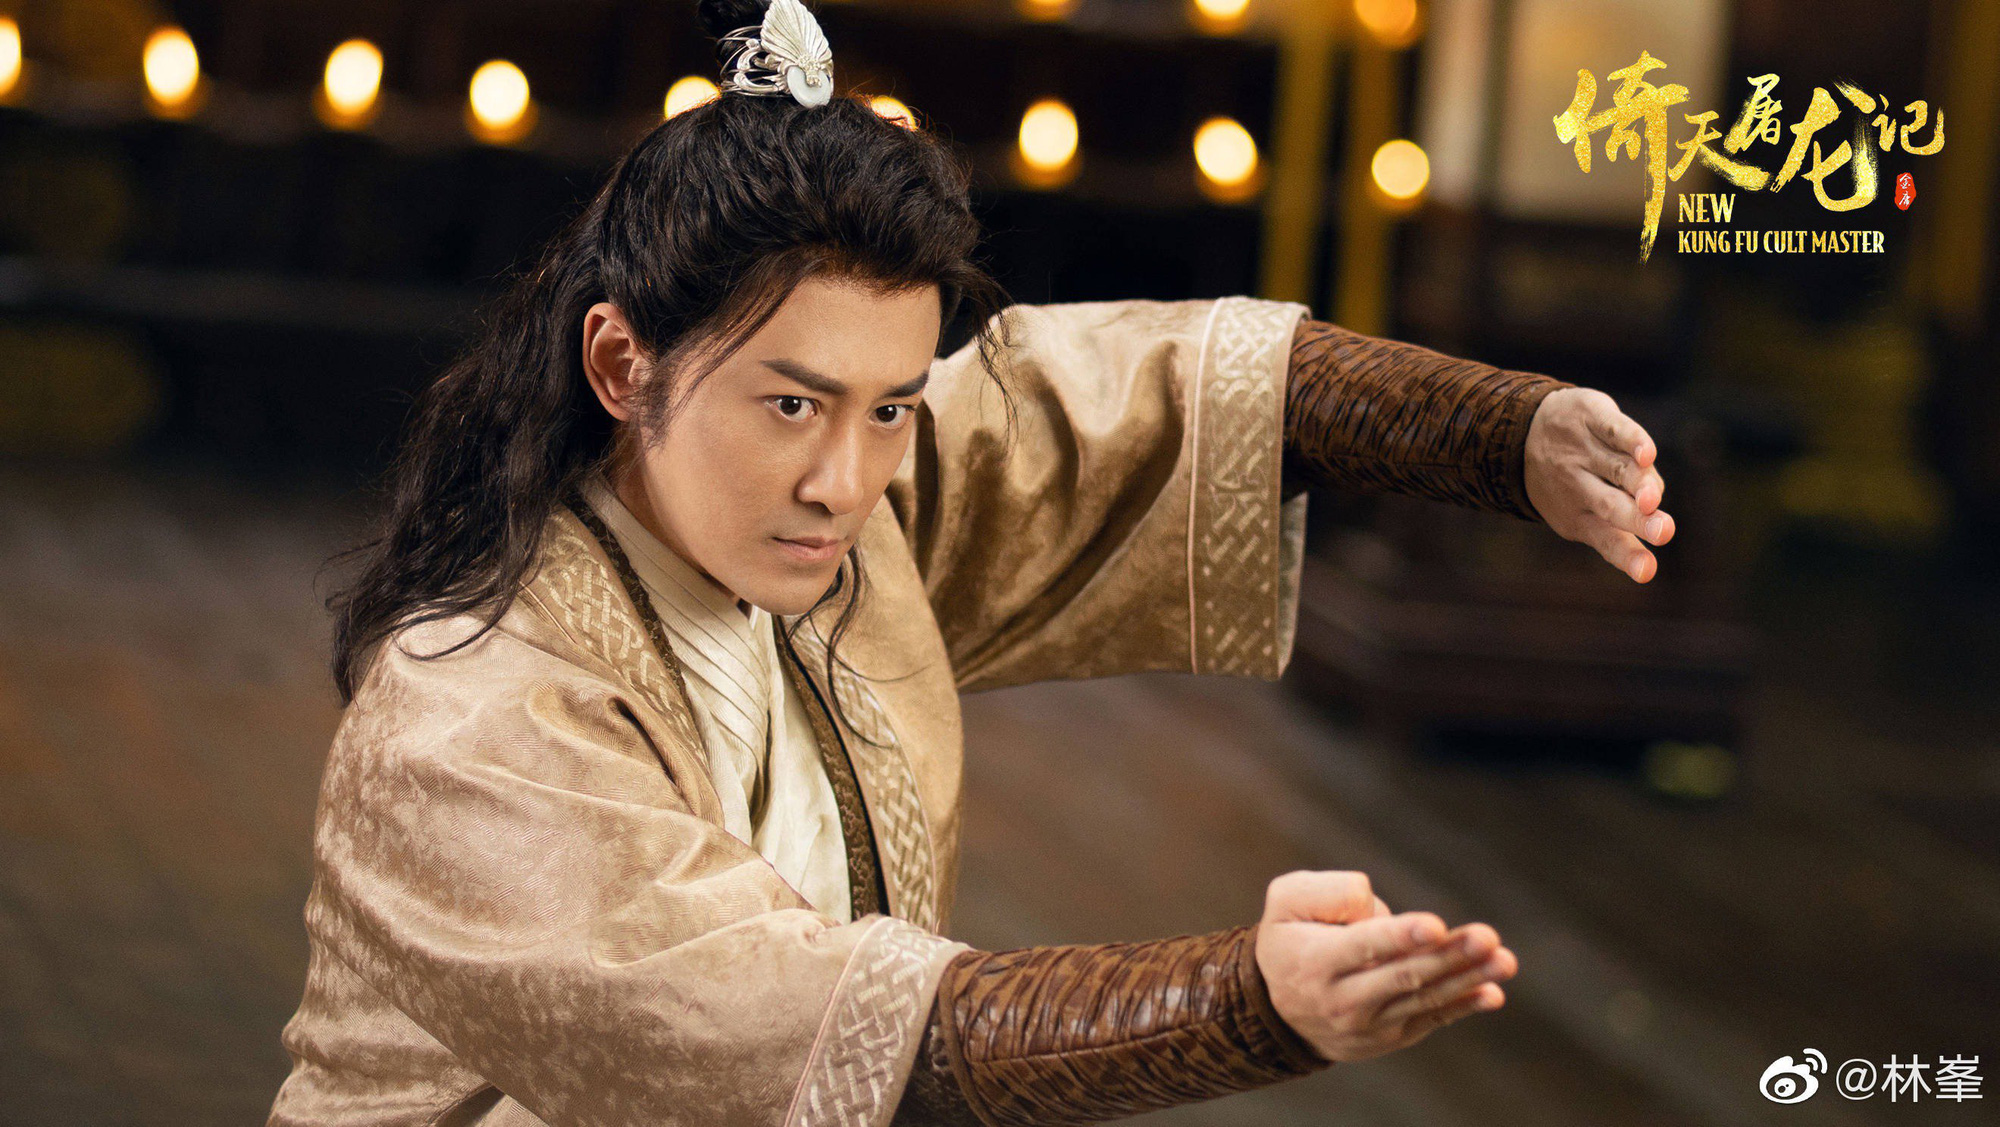 Trương Vô Kỵ già nhất màn ảnh: Giàu có nổi danh Hong Kong, yêu toàn chân dài tai tiếng - Ảnh 3.